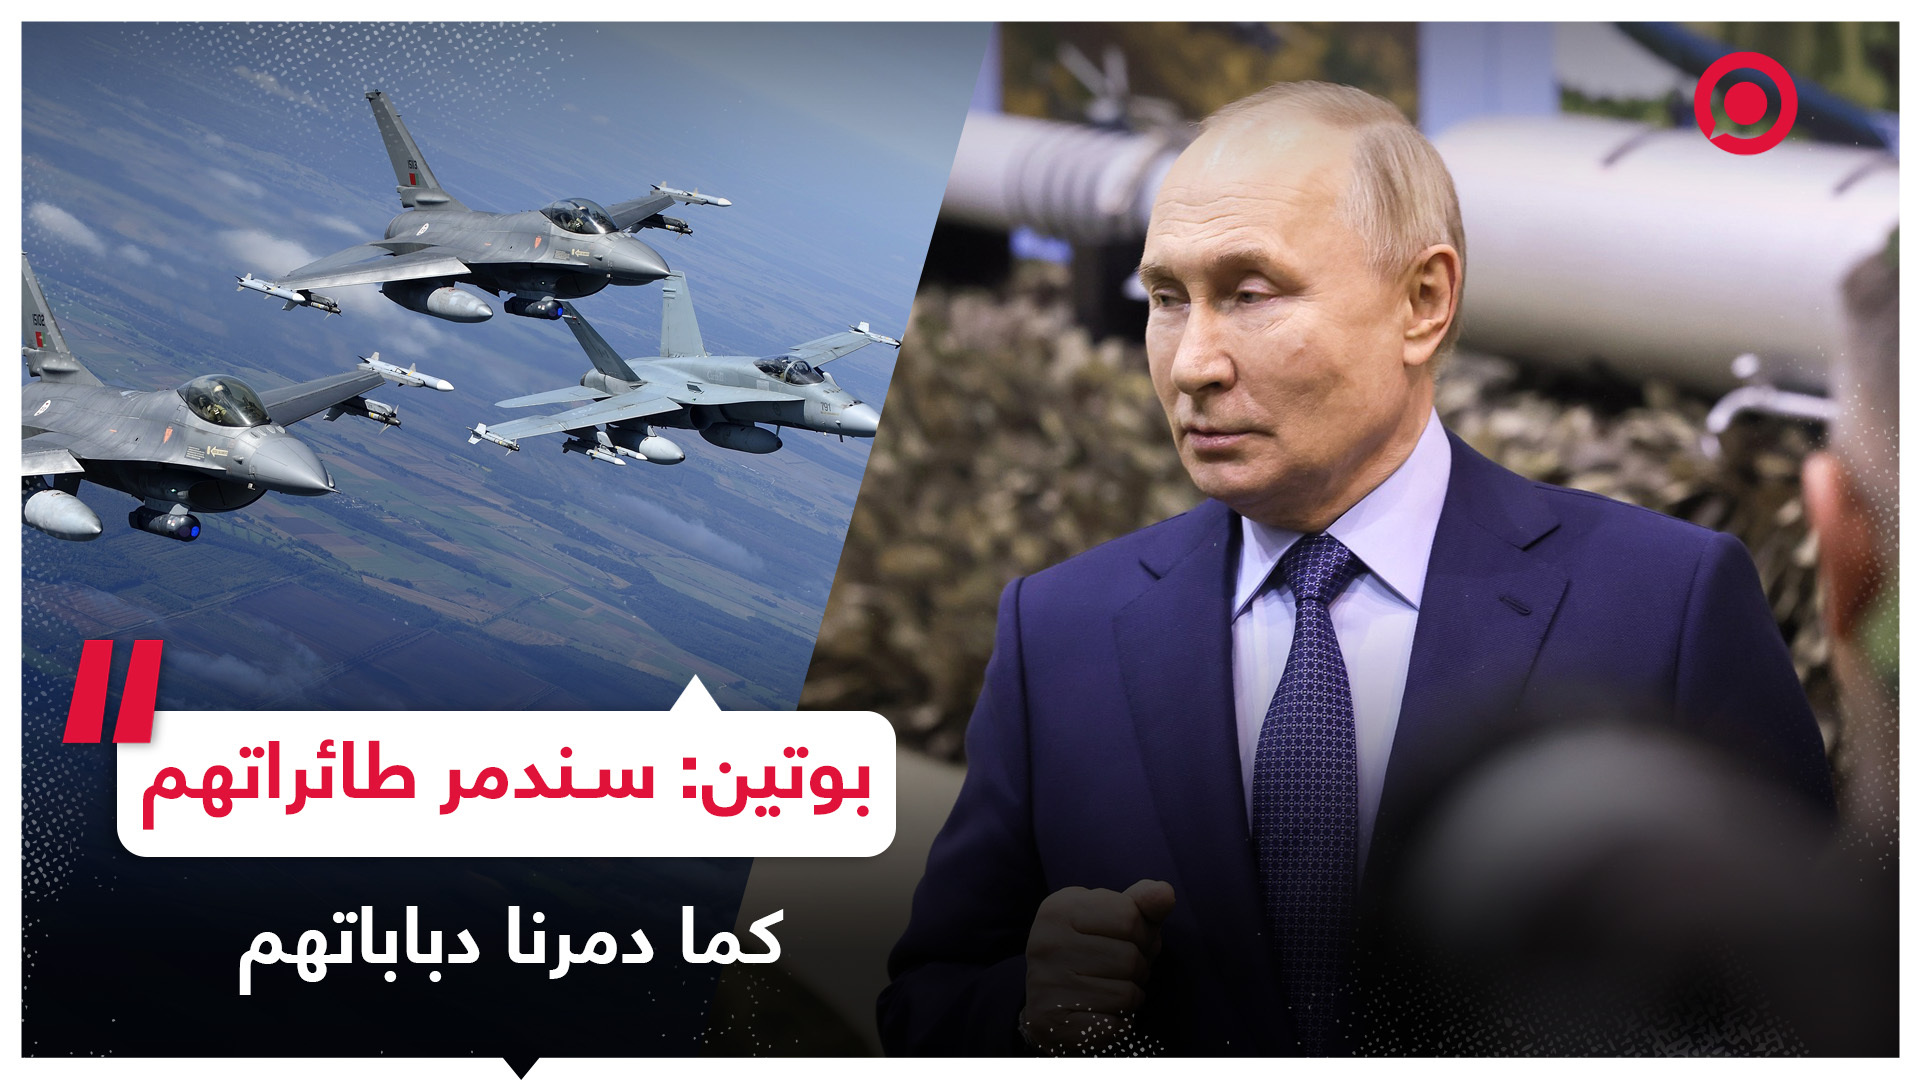 بوتين: روسيا ستدمر مقاتلات "F-16" إذا تم تسليمها إلى نظام كييف